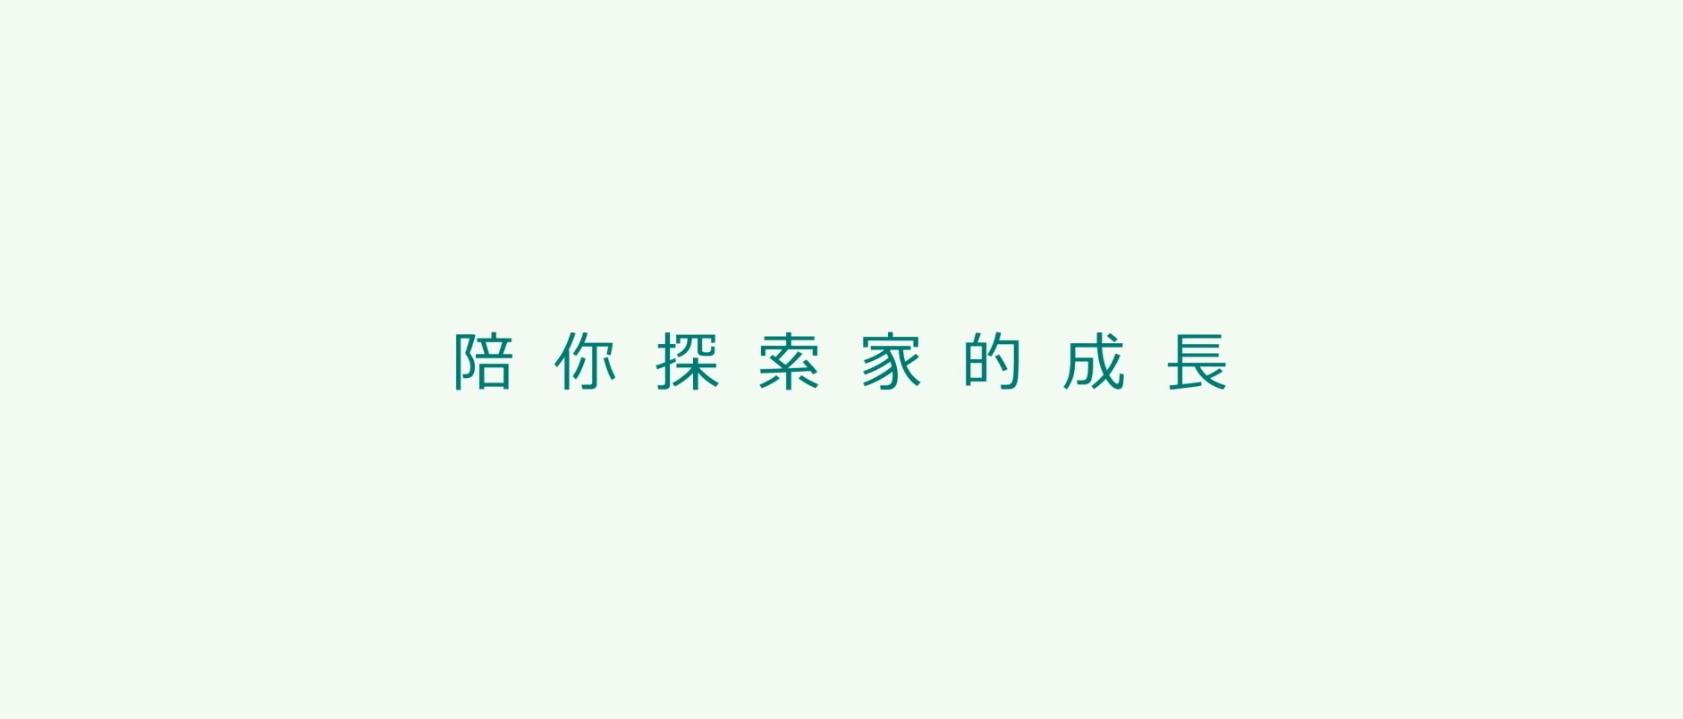 台湾人寿 形象广告“陪你去拜访把家的成长”吴兴国